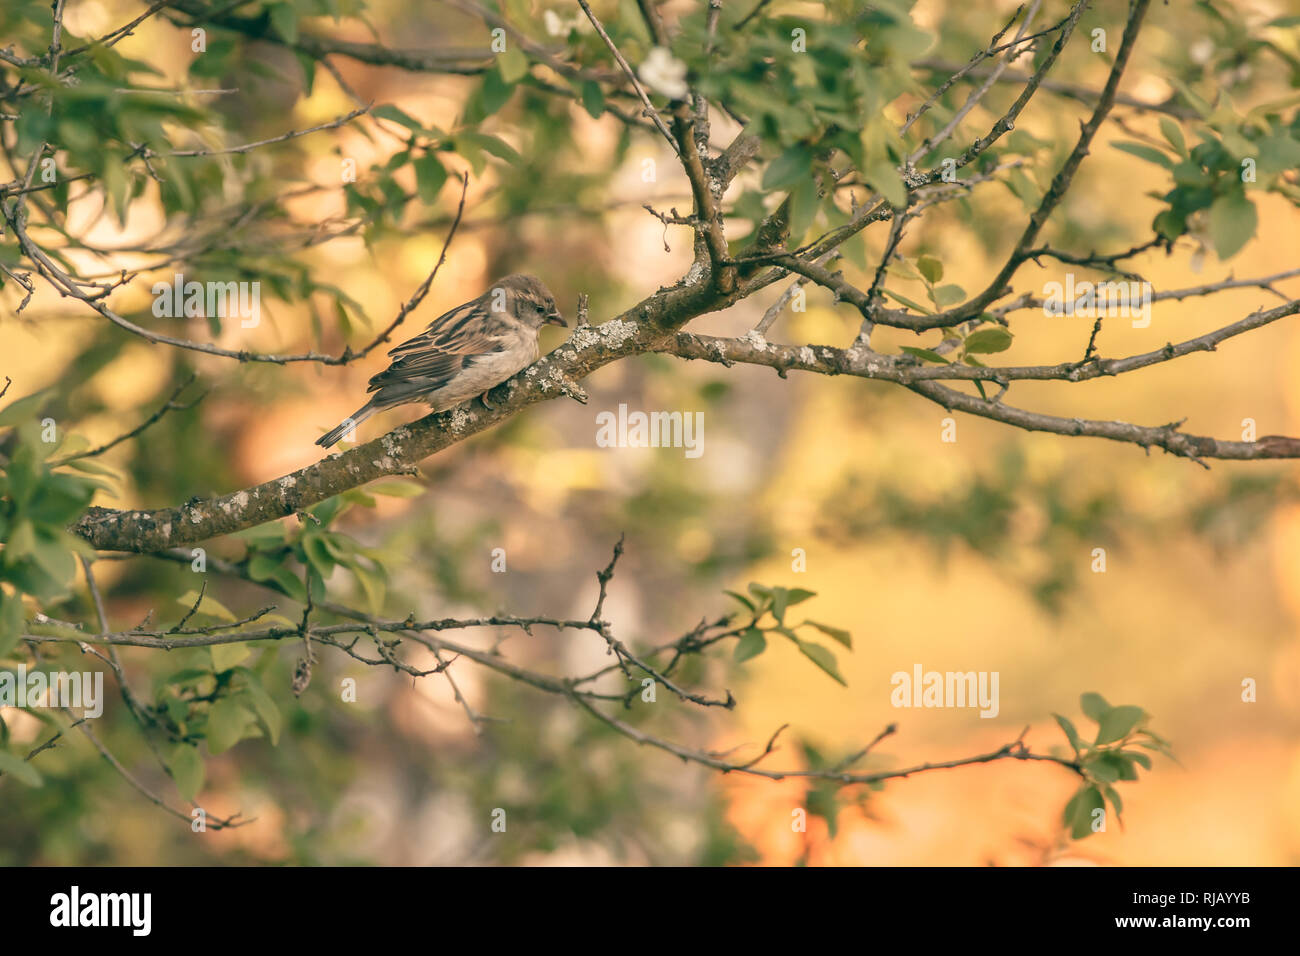 Ein Spatz (Passer domesticus) im Baum sonnt sich im warmen Sonnenlicht, Foto de stock